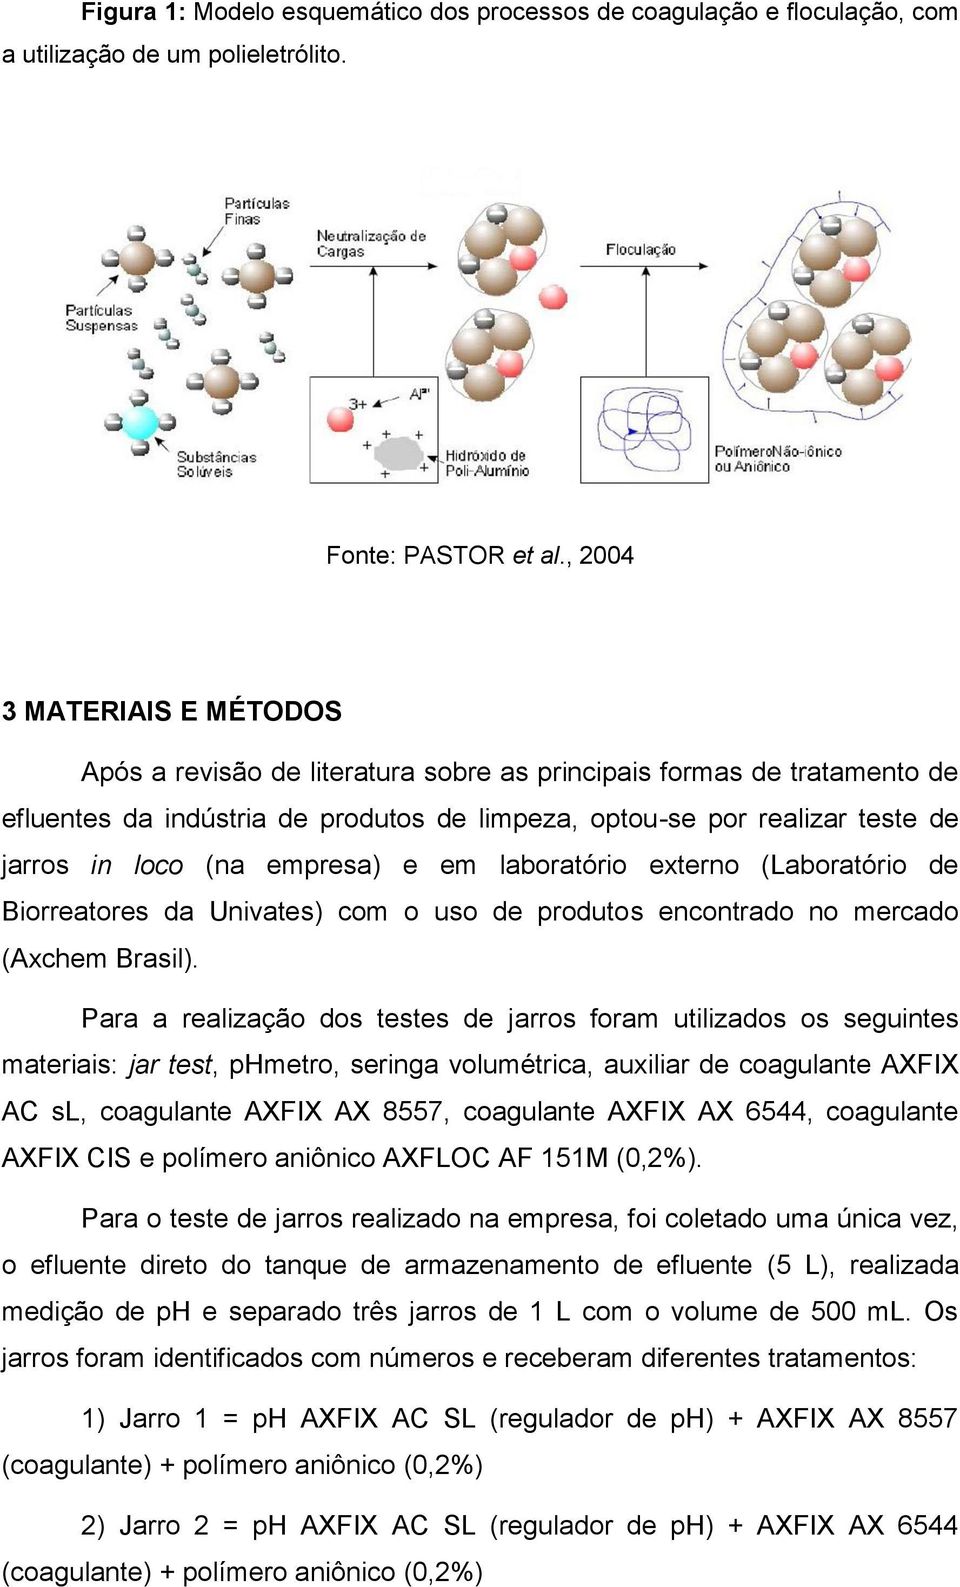 empresa) e em laboratório externo (Laboratório de Biorreatores da Univates) com o uso de produtos encontrado no mercado (Axchem Brasil).